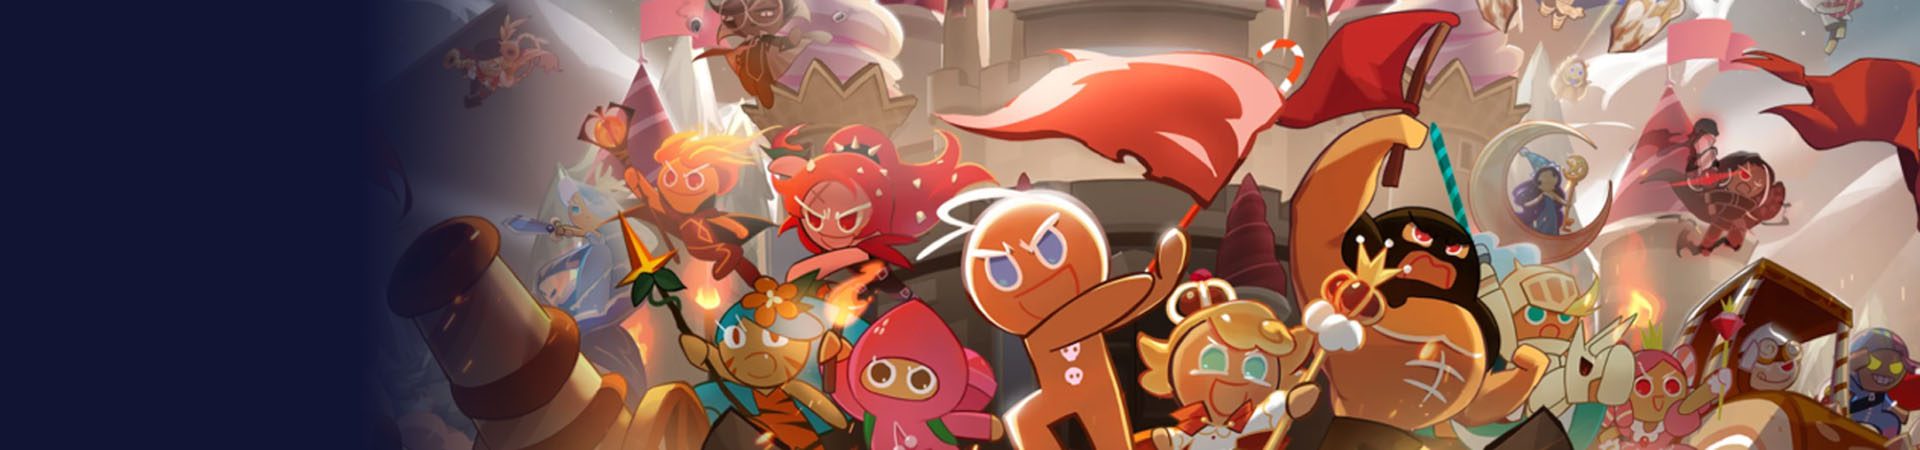 Cookie Run: Kingdom, a cute new RPG! banner